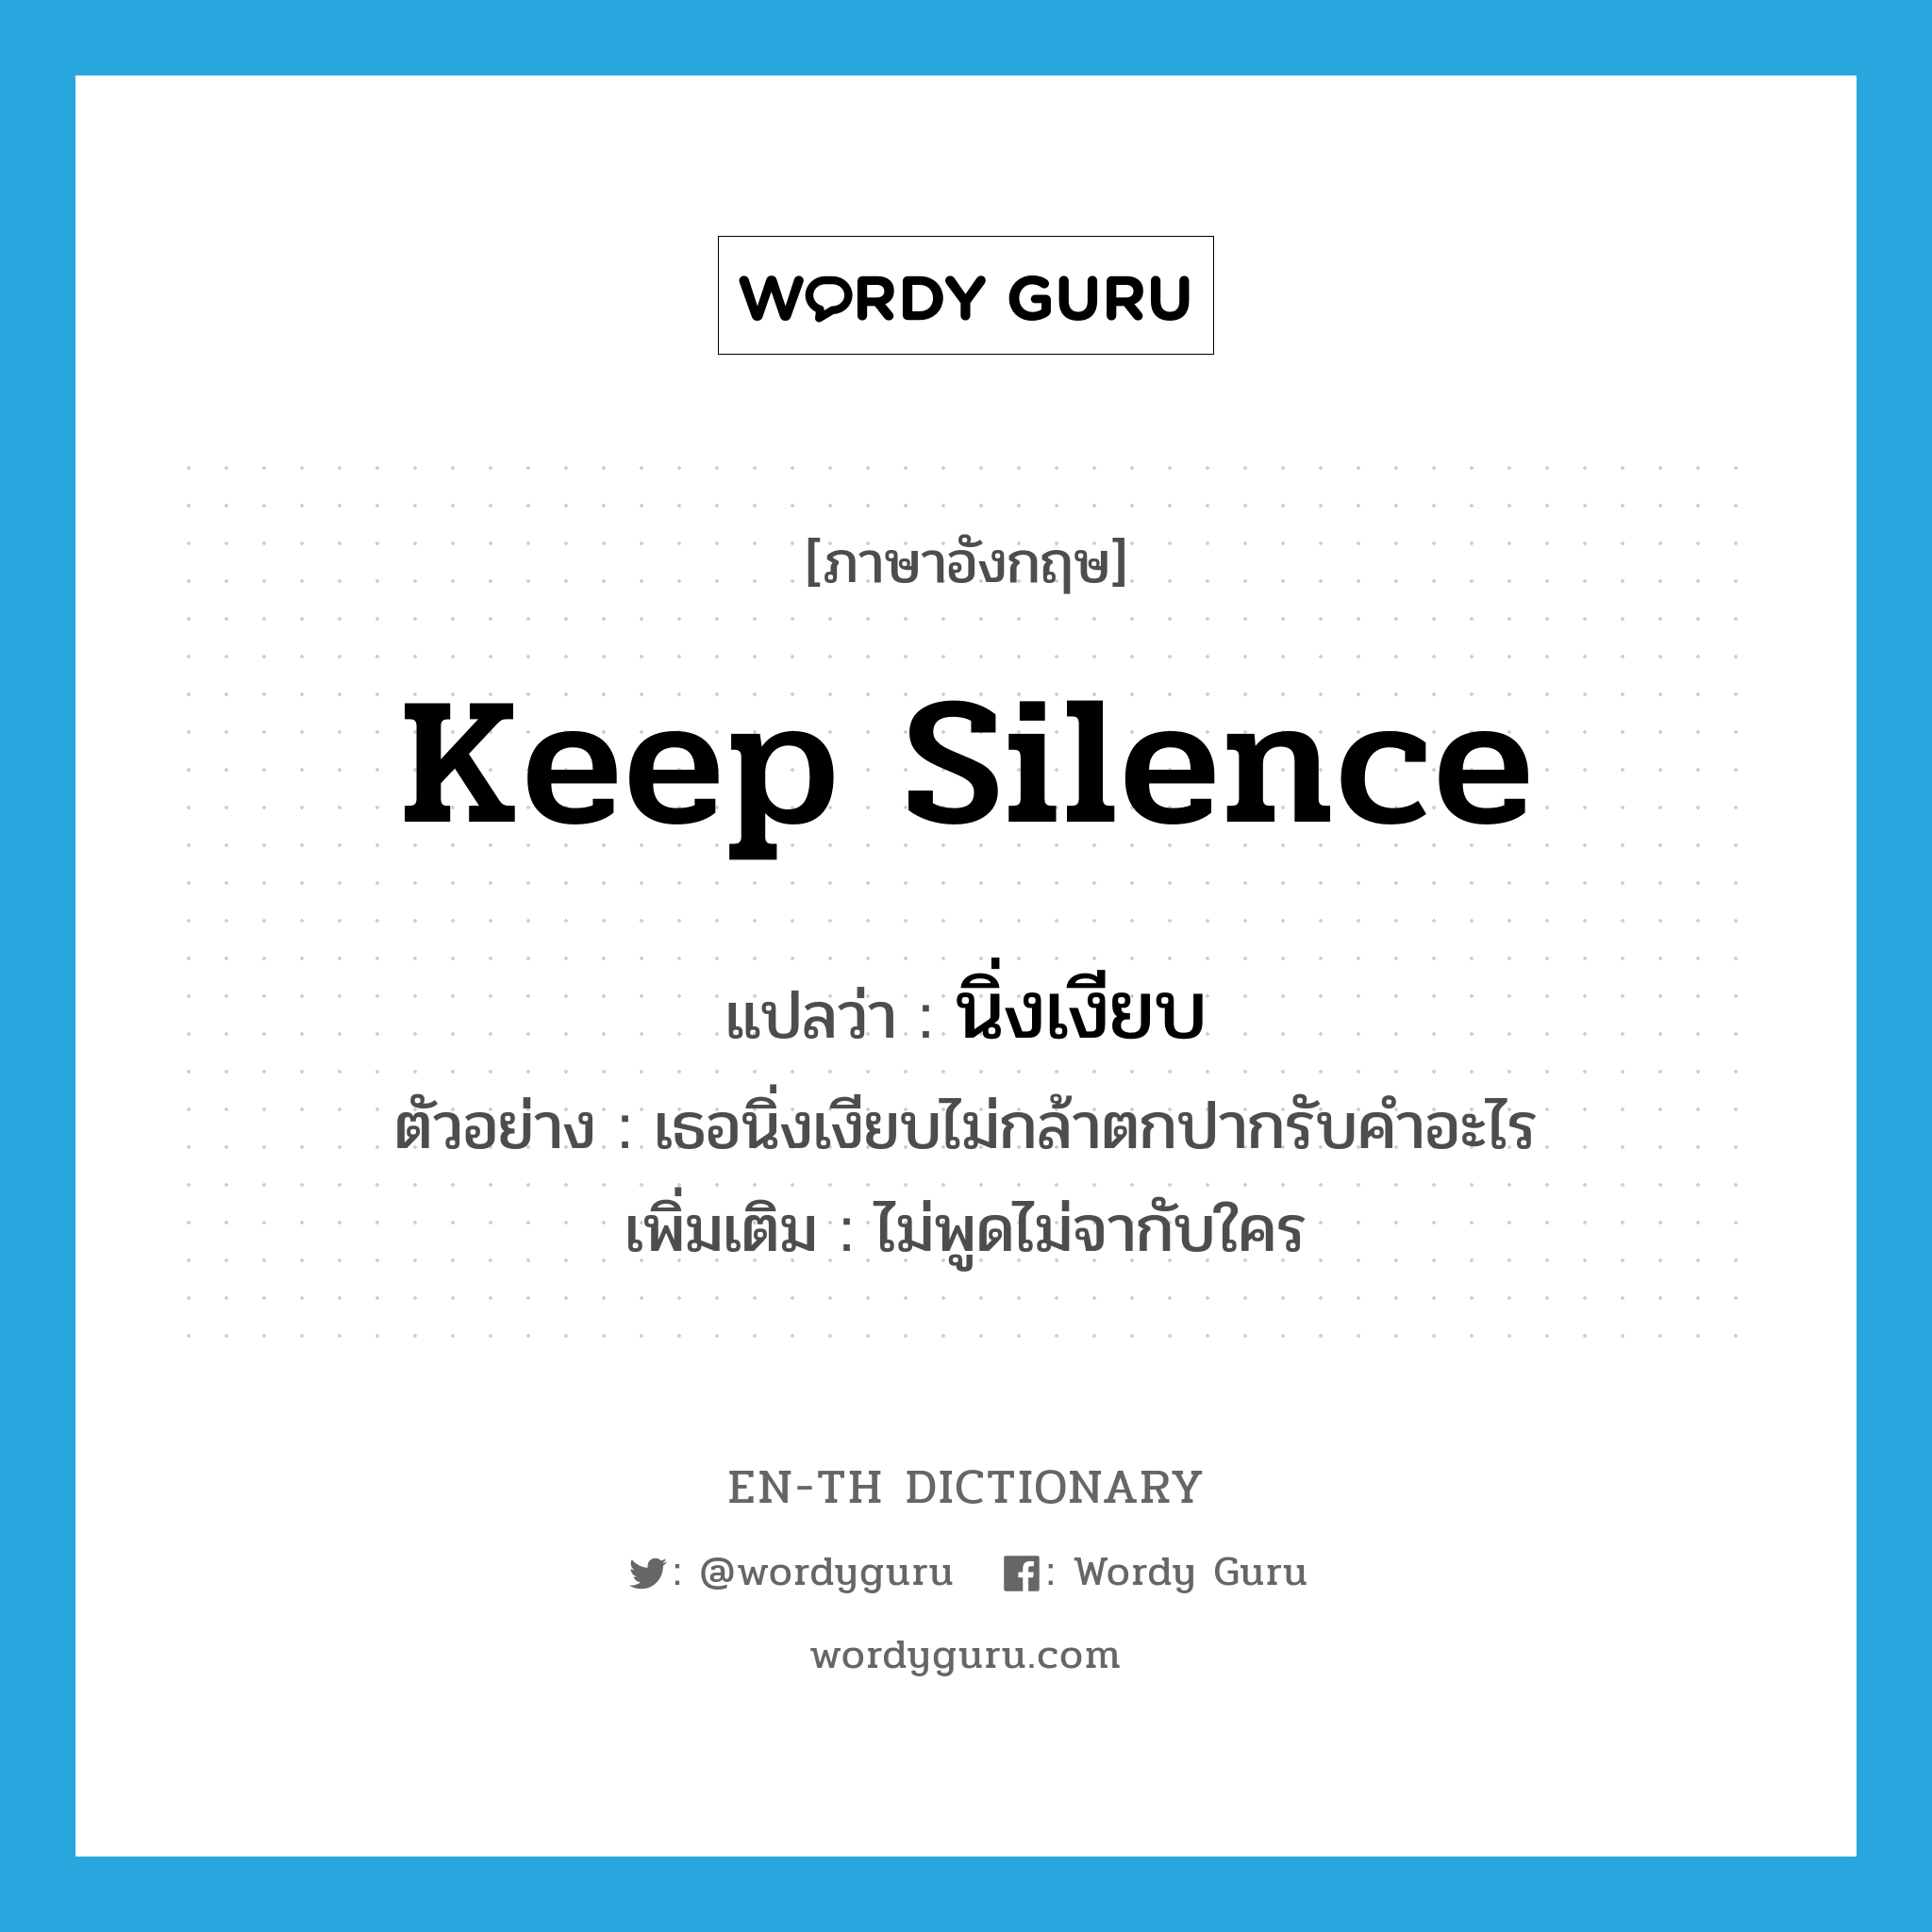 นิ่งเงียบ ภาษาอังกฤษ?, คำศัพท์ภาษาอังกฤษ นิ่งเงียบ แปลว่า keep silence ประเภท V ตัวอย่าง เธอนิ่งเงียบไม่กล้าตกปากรับคำอะไร เพิ่มเติม ไม่พูดไม่จากับใคร หมวด V